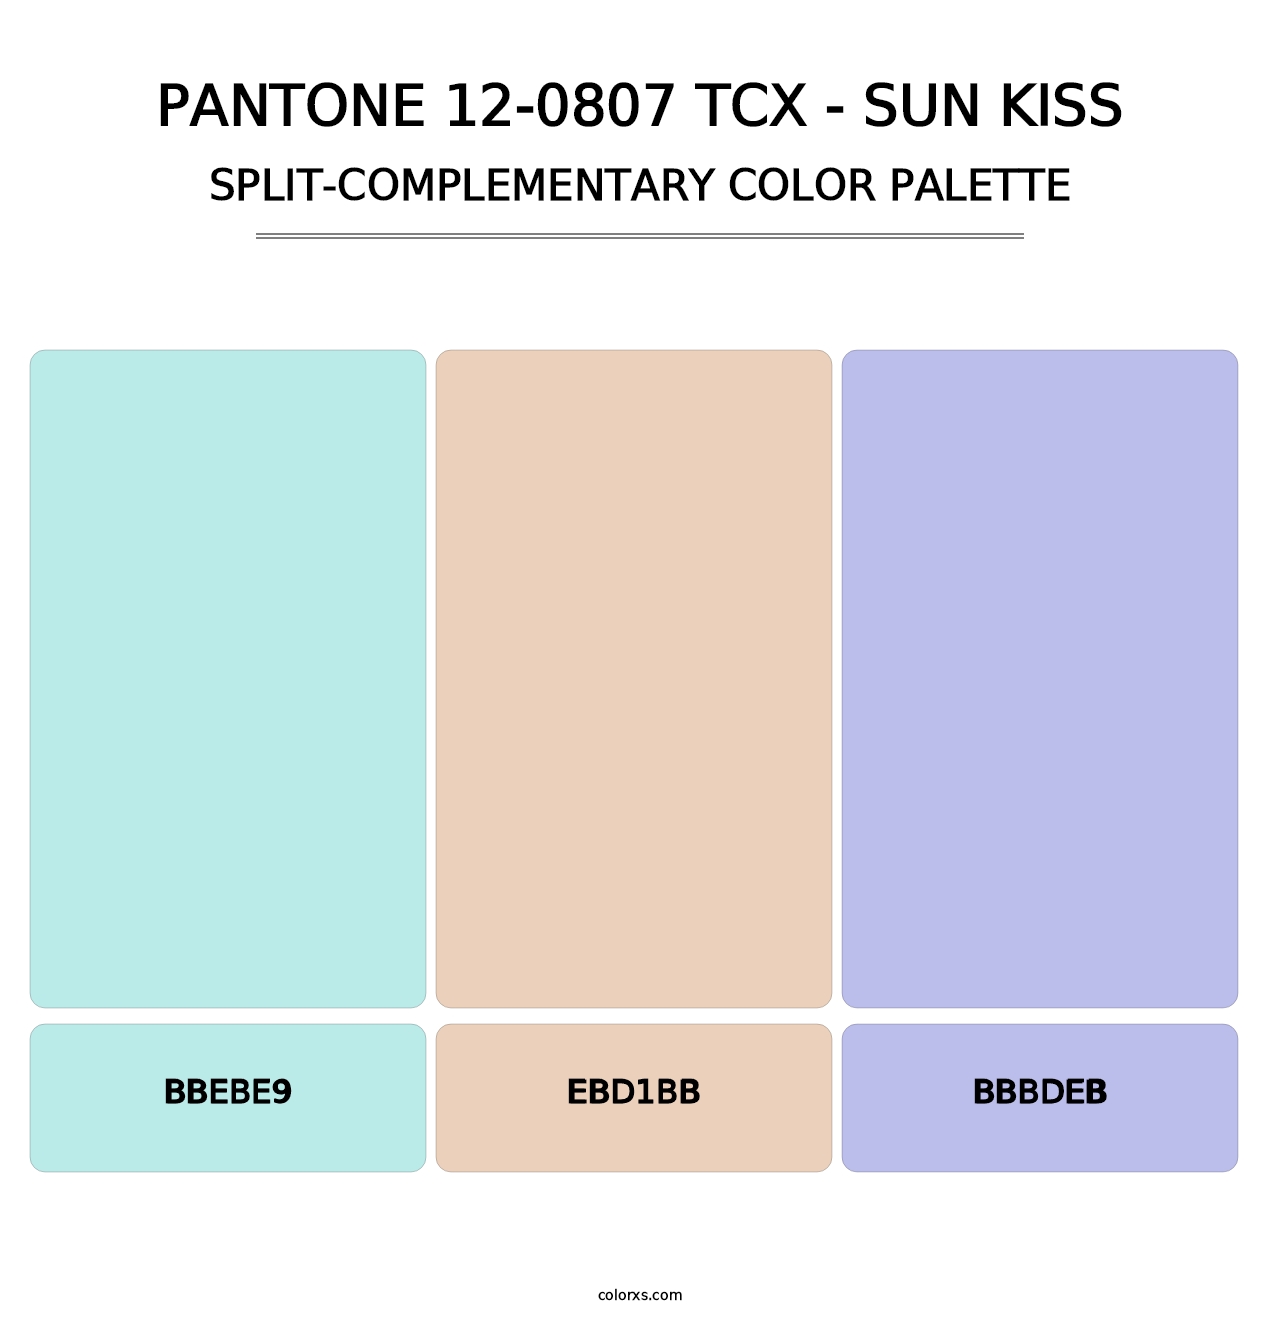 PANTONE 12-0807 TCX - Sun Kiss - Split-Complementary Color Palette